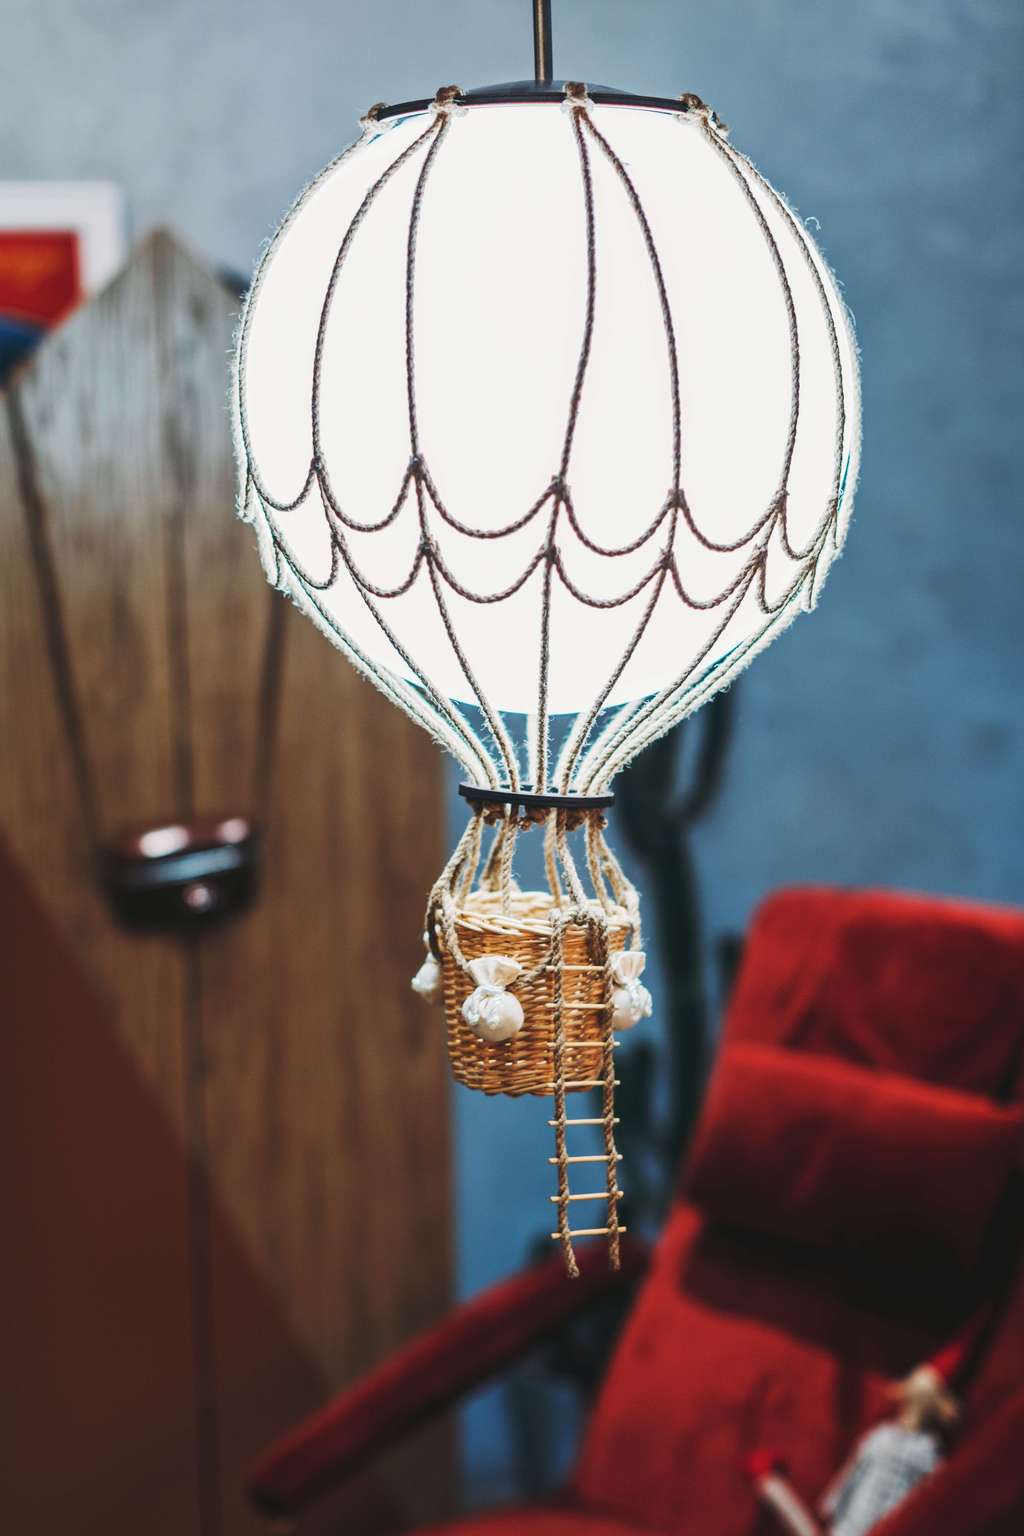 Лампа с шарами. Монгольфьер воздушный шар. Монгольфьер светильник. Люстра воздушные шары. Люс ра в виде воздушного шара.